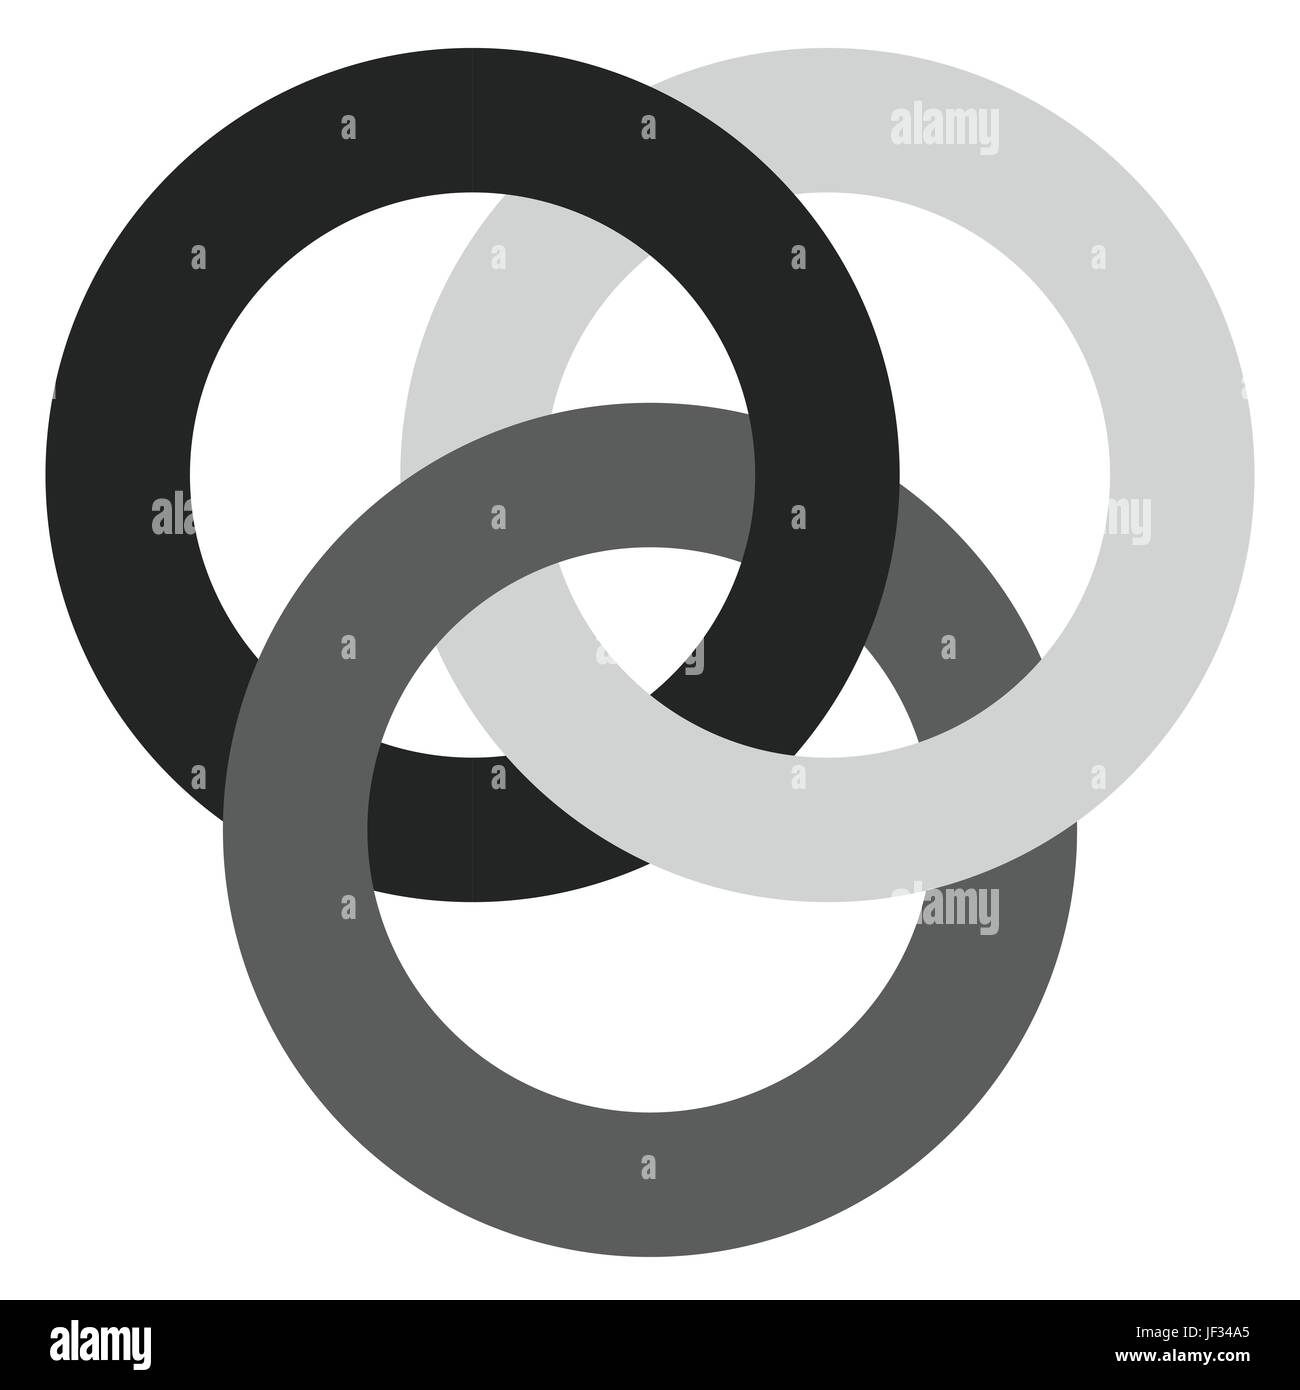 Icono con 3 círculos entrelazados. anillos. Símbolos abstractos para la  conexión, la unidad, la relación, vinculación o conceptos similares Imagen  Vector de stock - Alamy